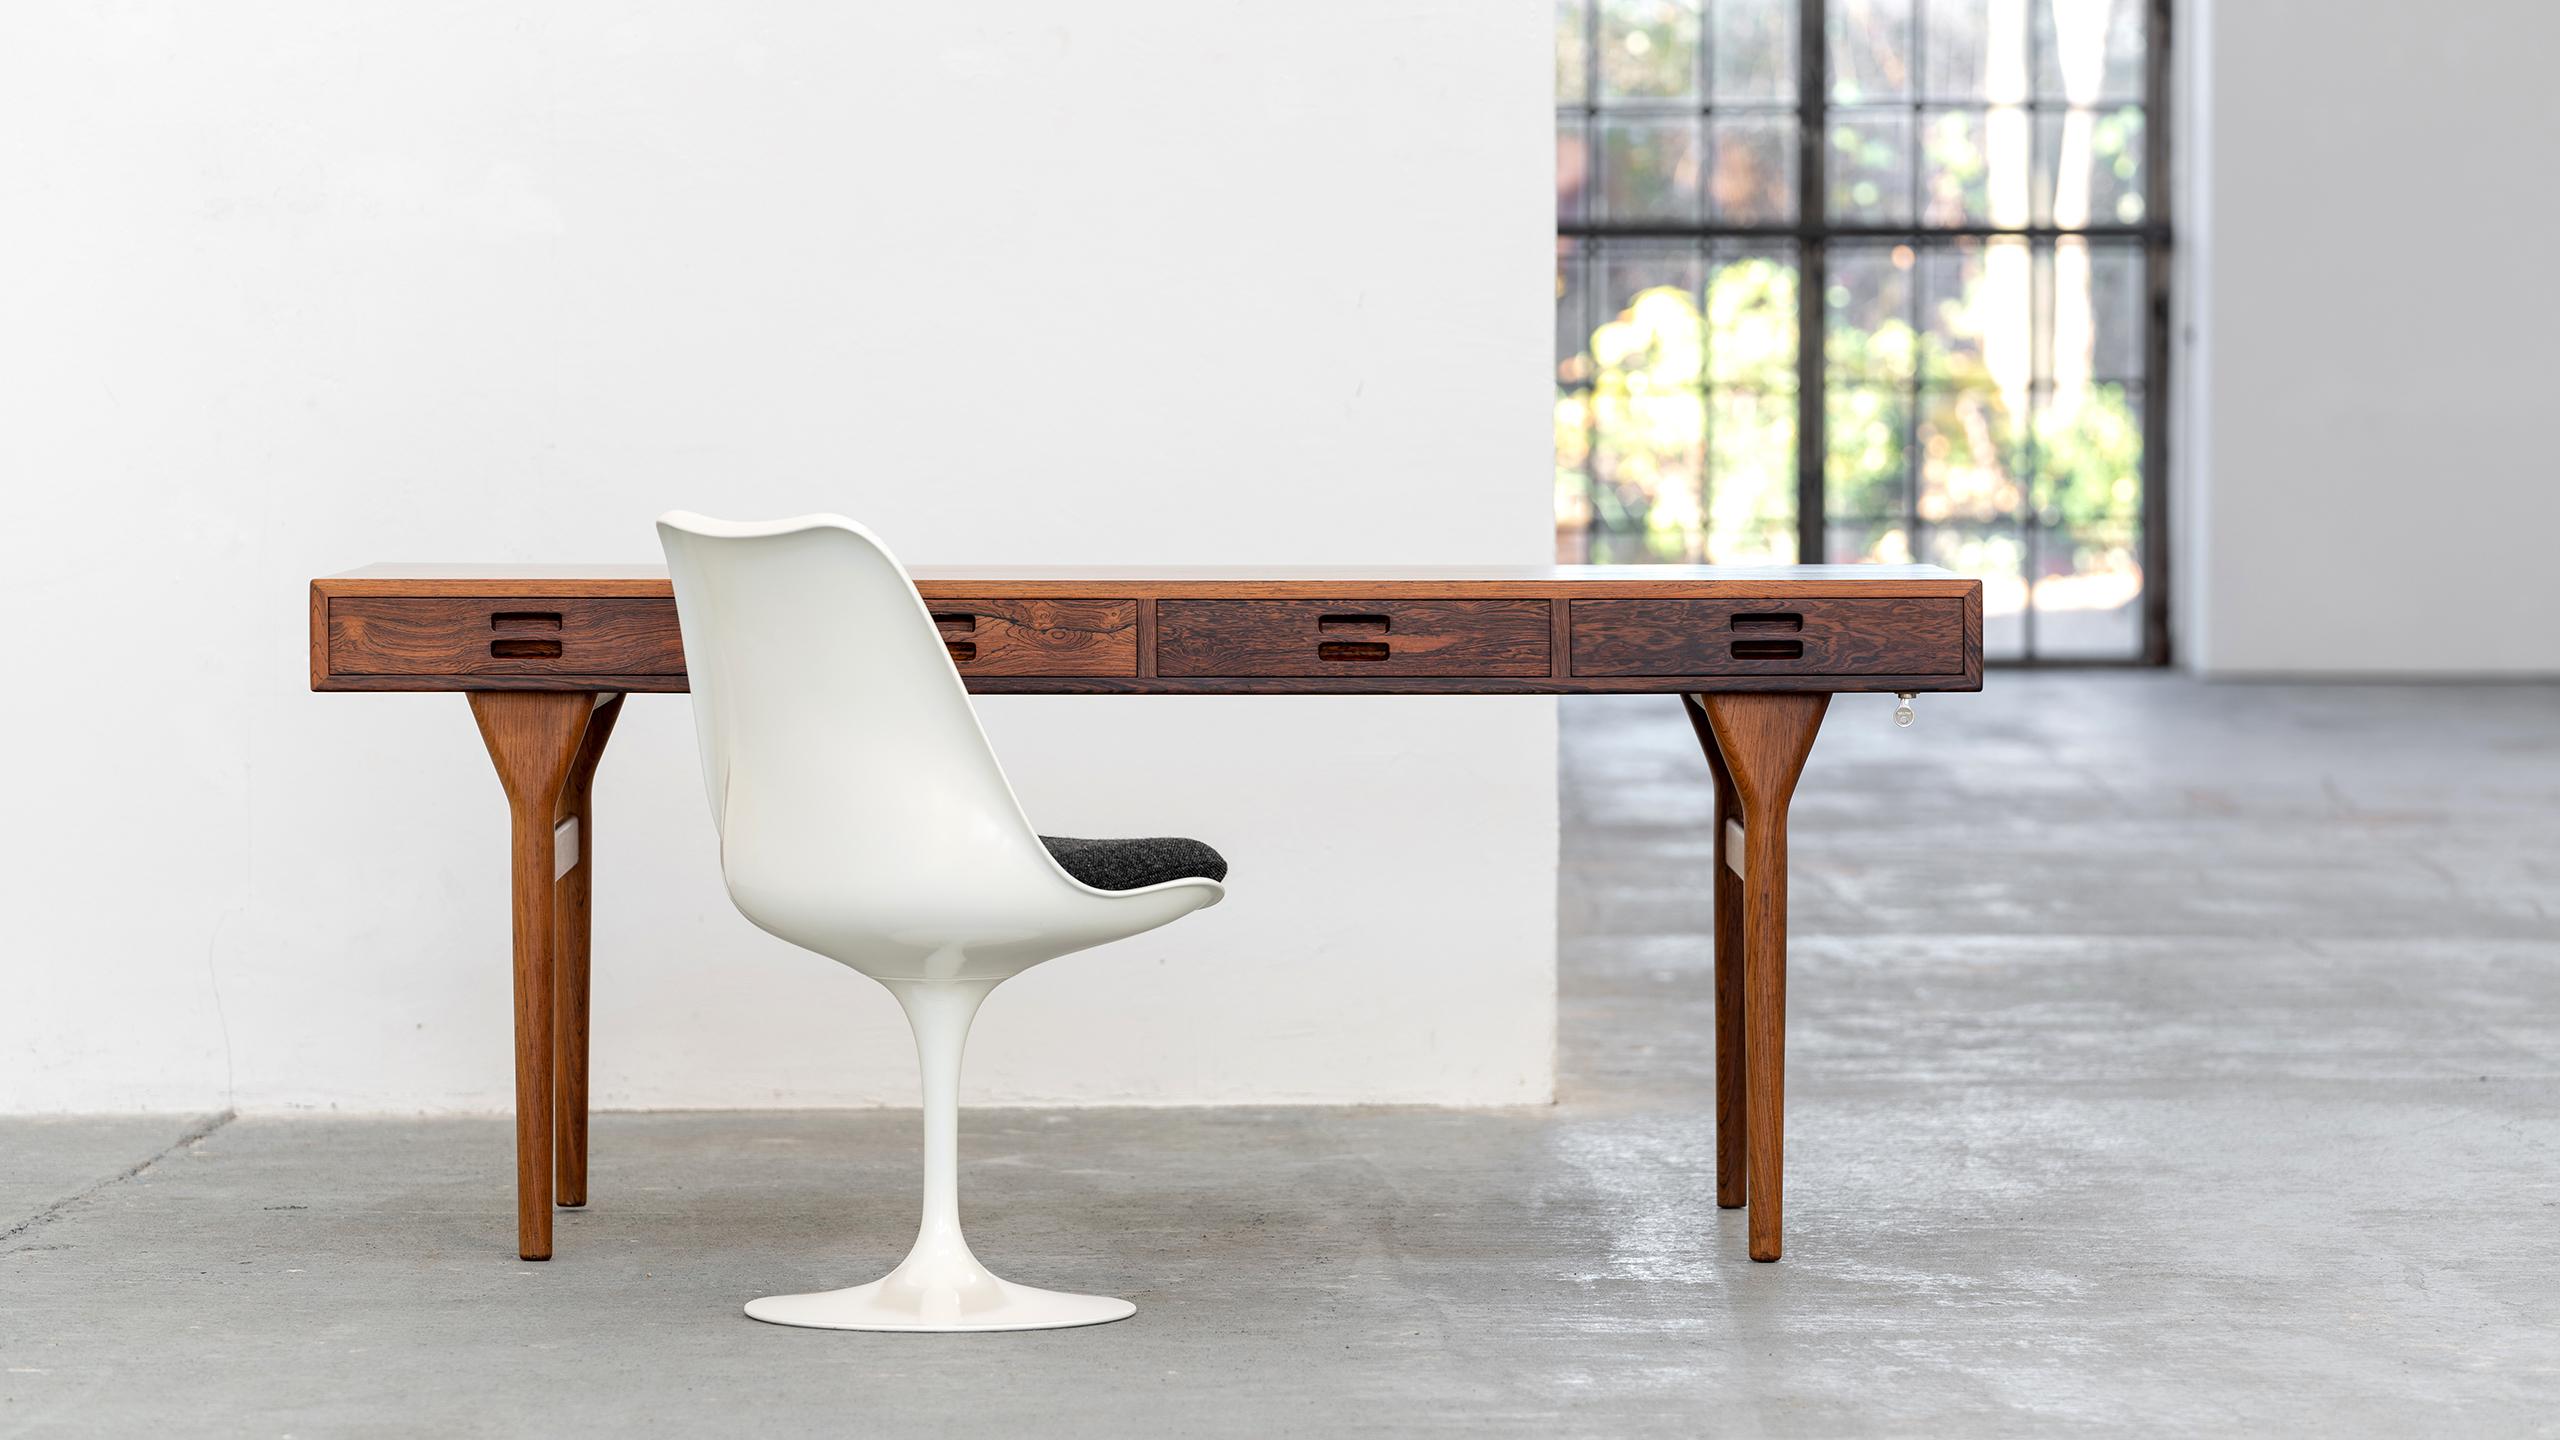 Ce design élégant de Nanna & Jørgen Ditzel par Søren Willadsen sert de bureau, de table d'écriture, de table de bibliothèque, 
ou même une table console dans un grand espace. 

La forme dépouillée et minimale est ravissante sous tous les angles.